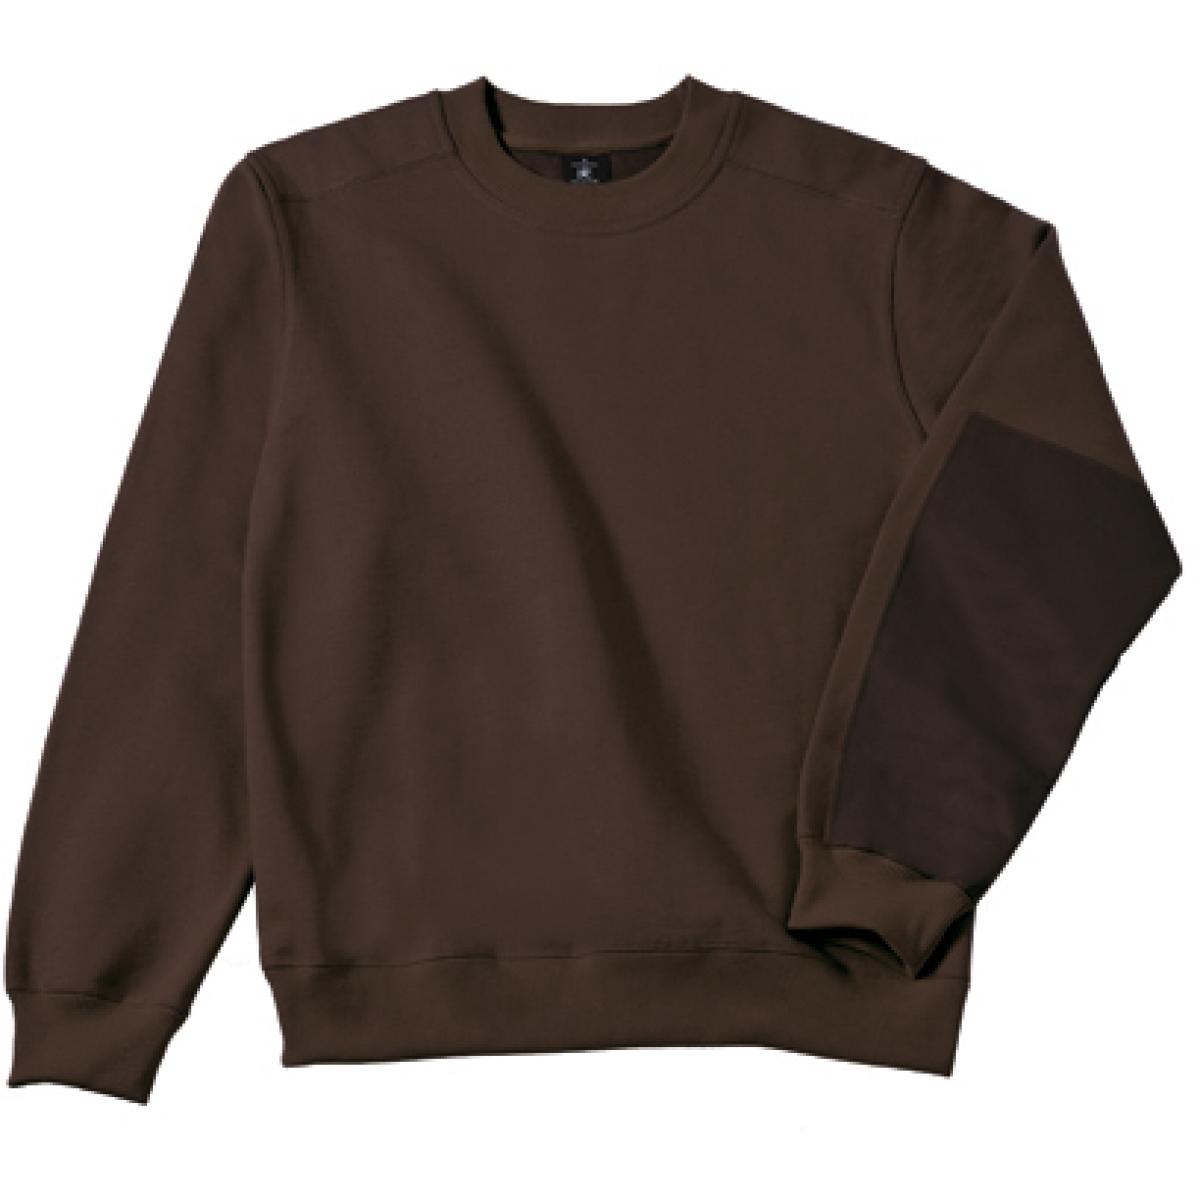 Hersteller: B&C Pro Collection Herstellernummer: WUC20 Artikelbezeichnung: Hero Pro Workwear Sweatshirt + Waschbar bis 60 °C Farbe: Brown